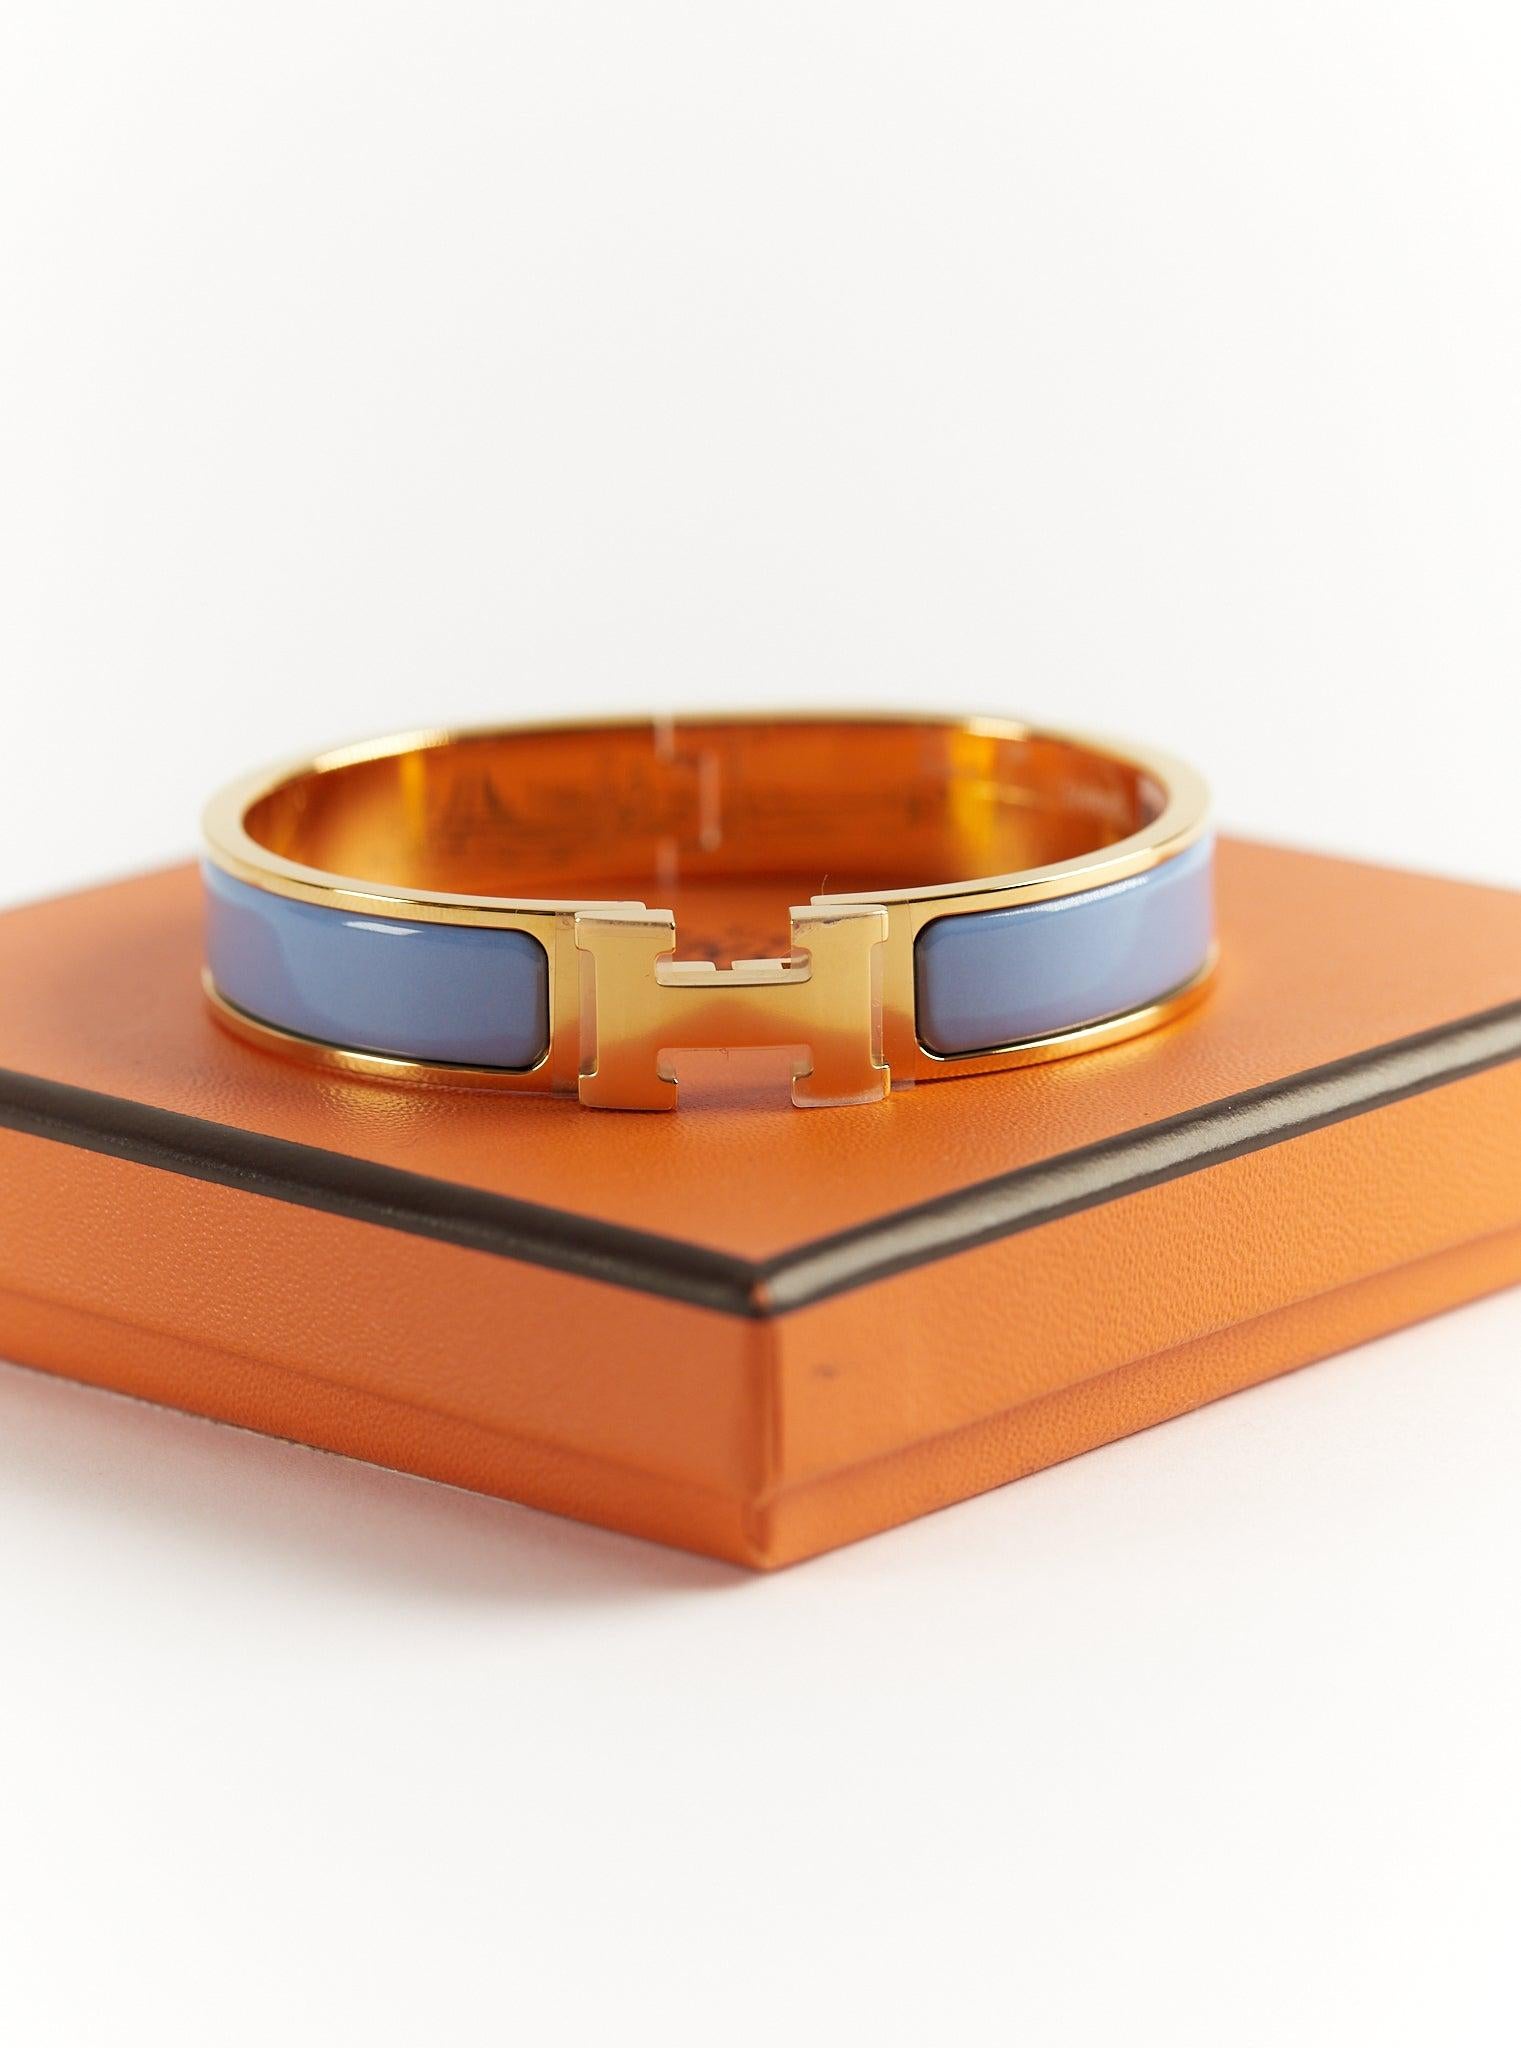 Hermès Clic H GM-Armband in Chardon und Gold

Größe des Handgelenks: 16.8 cm  Breite: 12 mm

Hergestellt in Frankreich